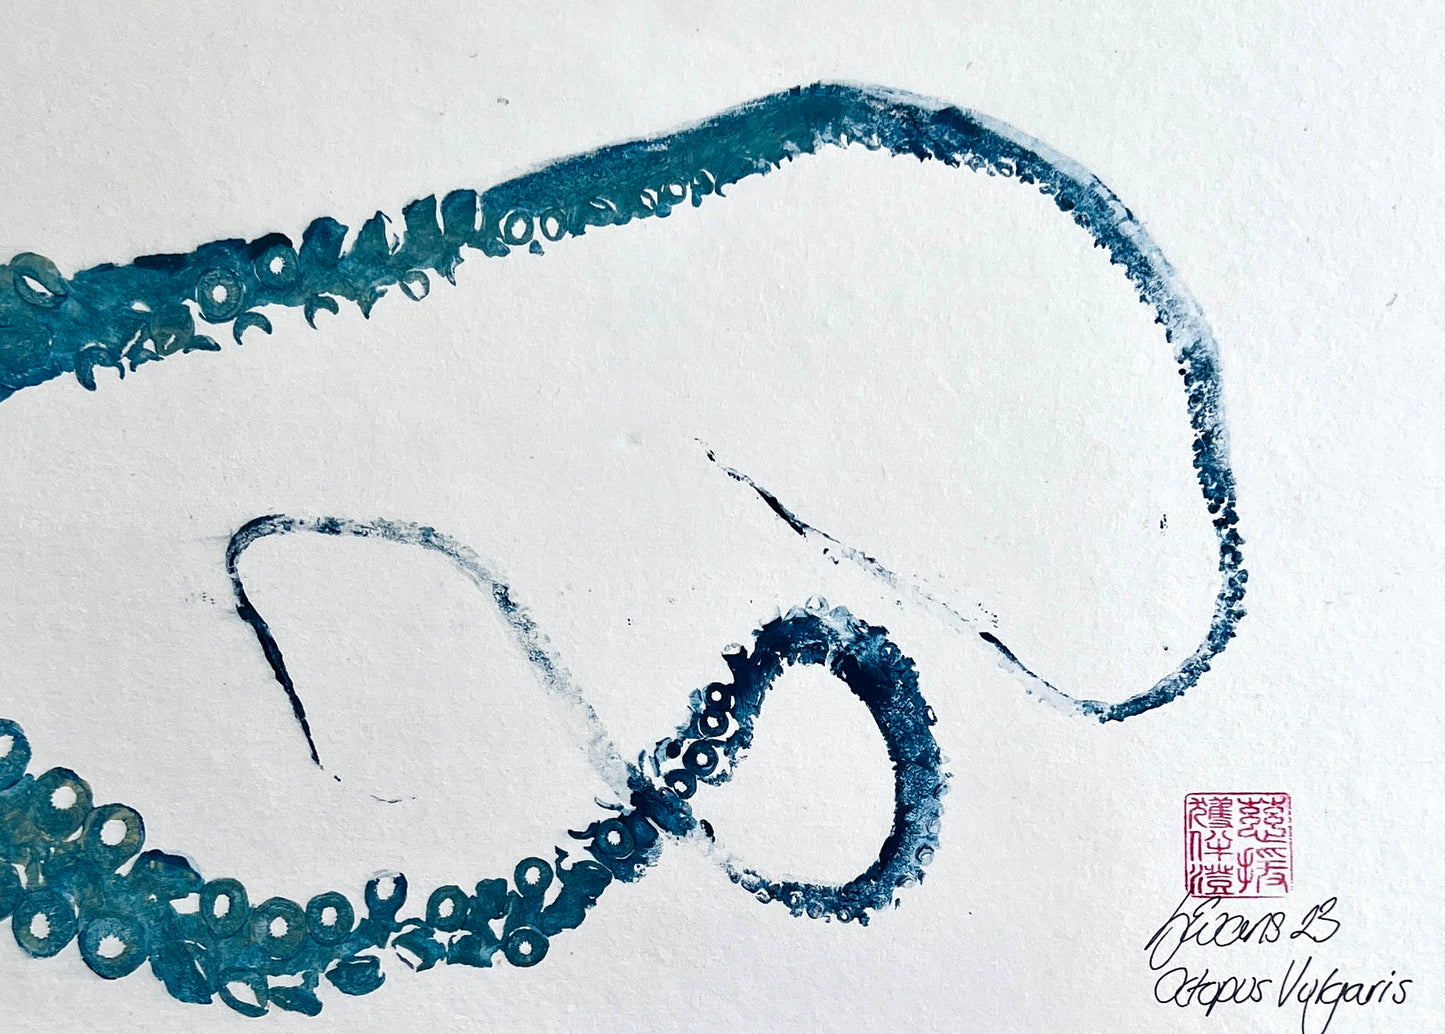 Gyotaku Impression taken from Octopus Vulgaris Tentacles